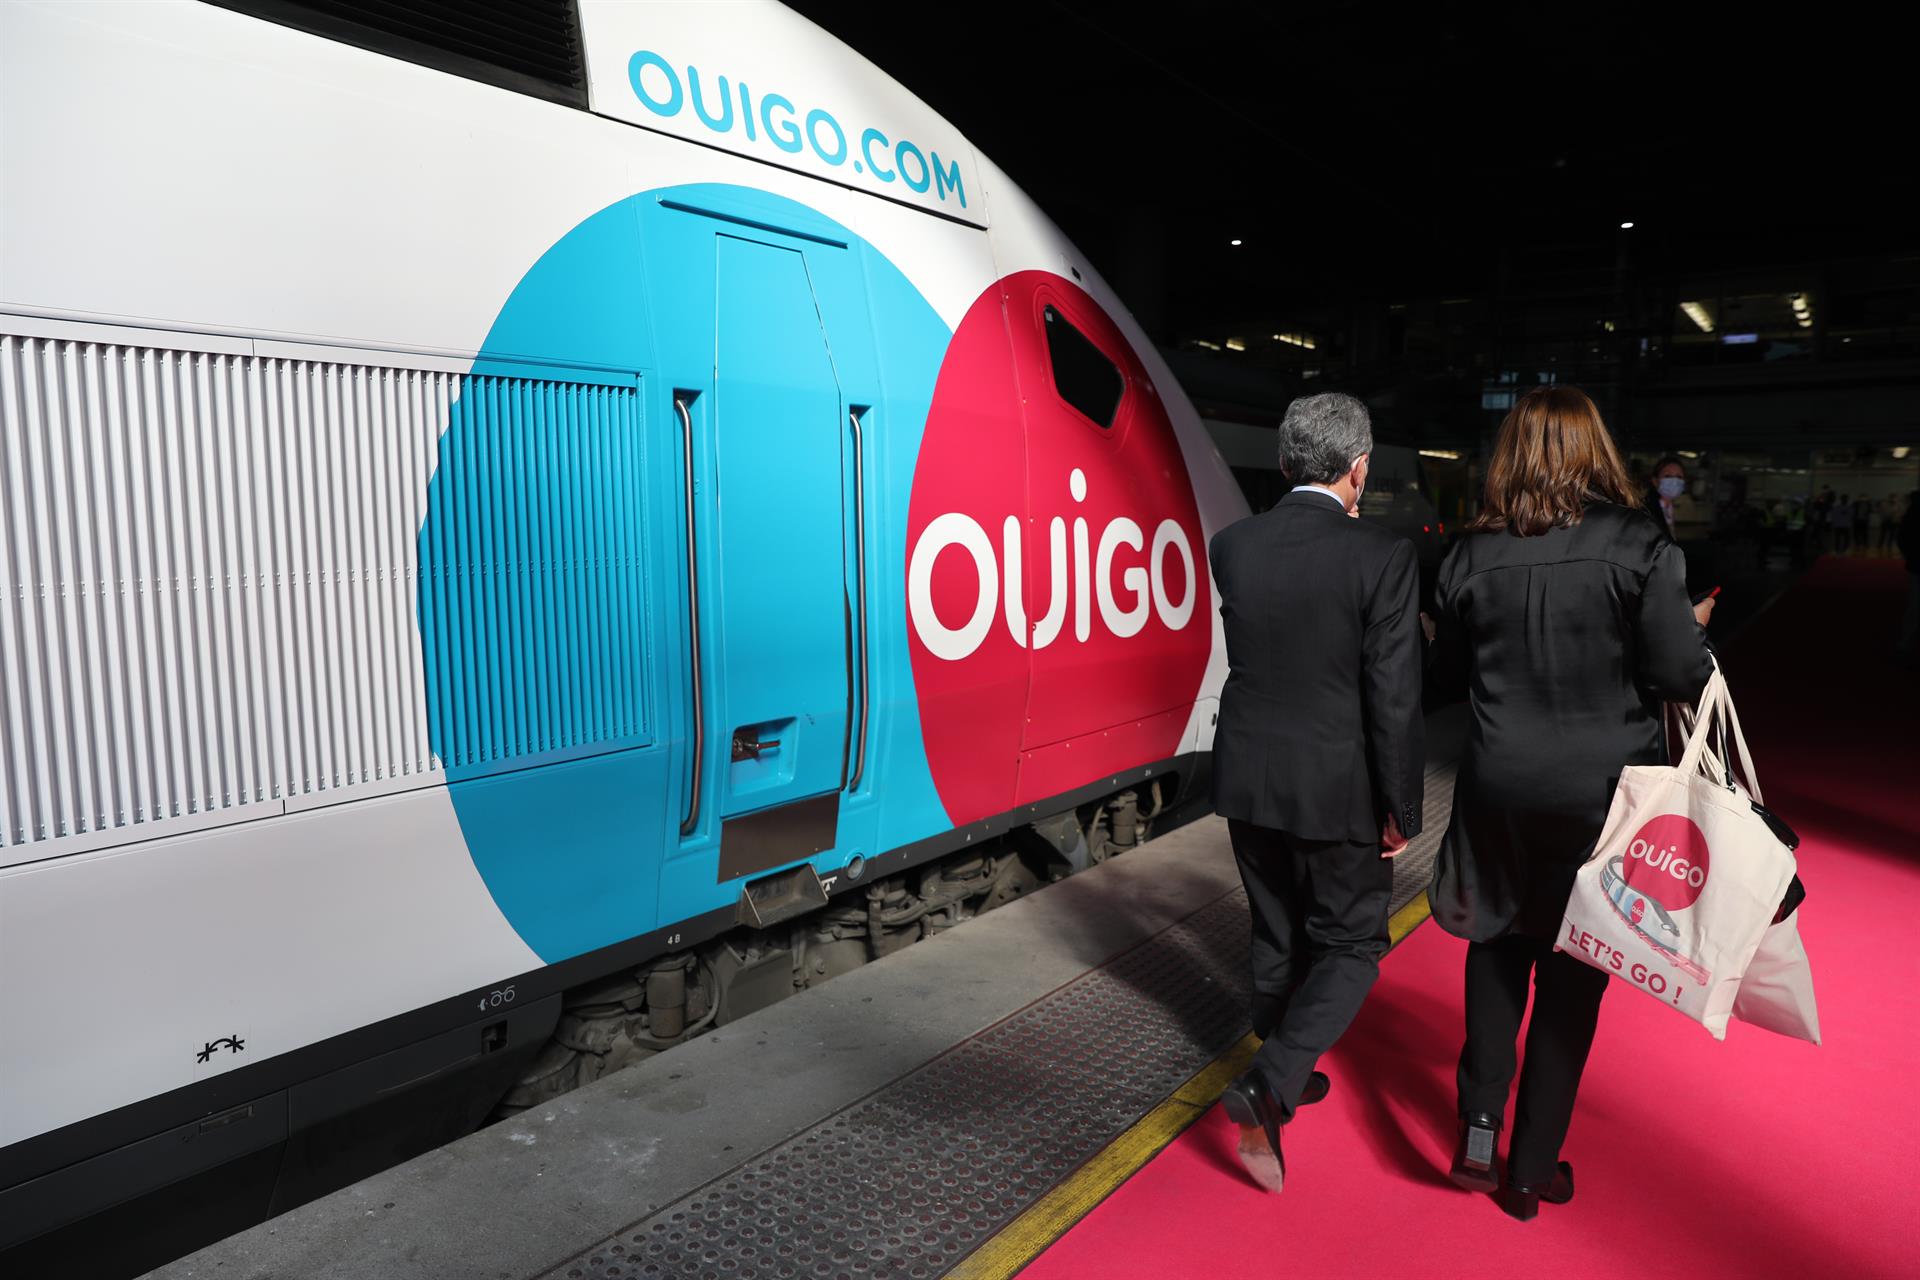 El operador ferroviario Ouigo apuesta por Alicante aumentando las frecuencias con Madrid